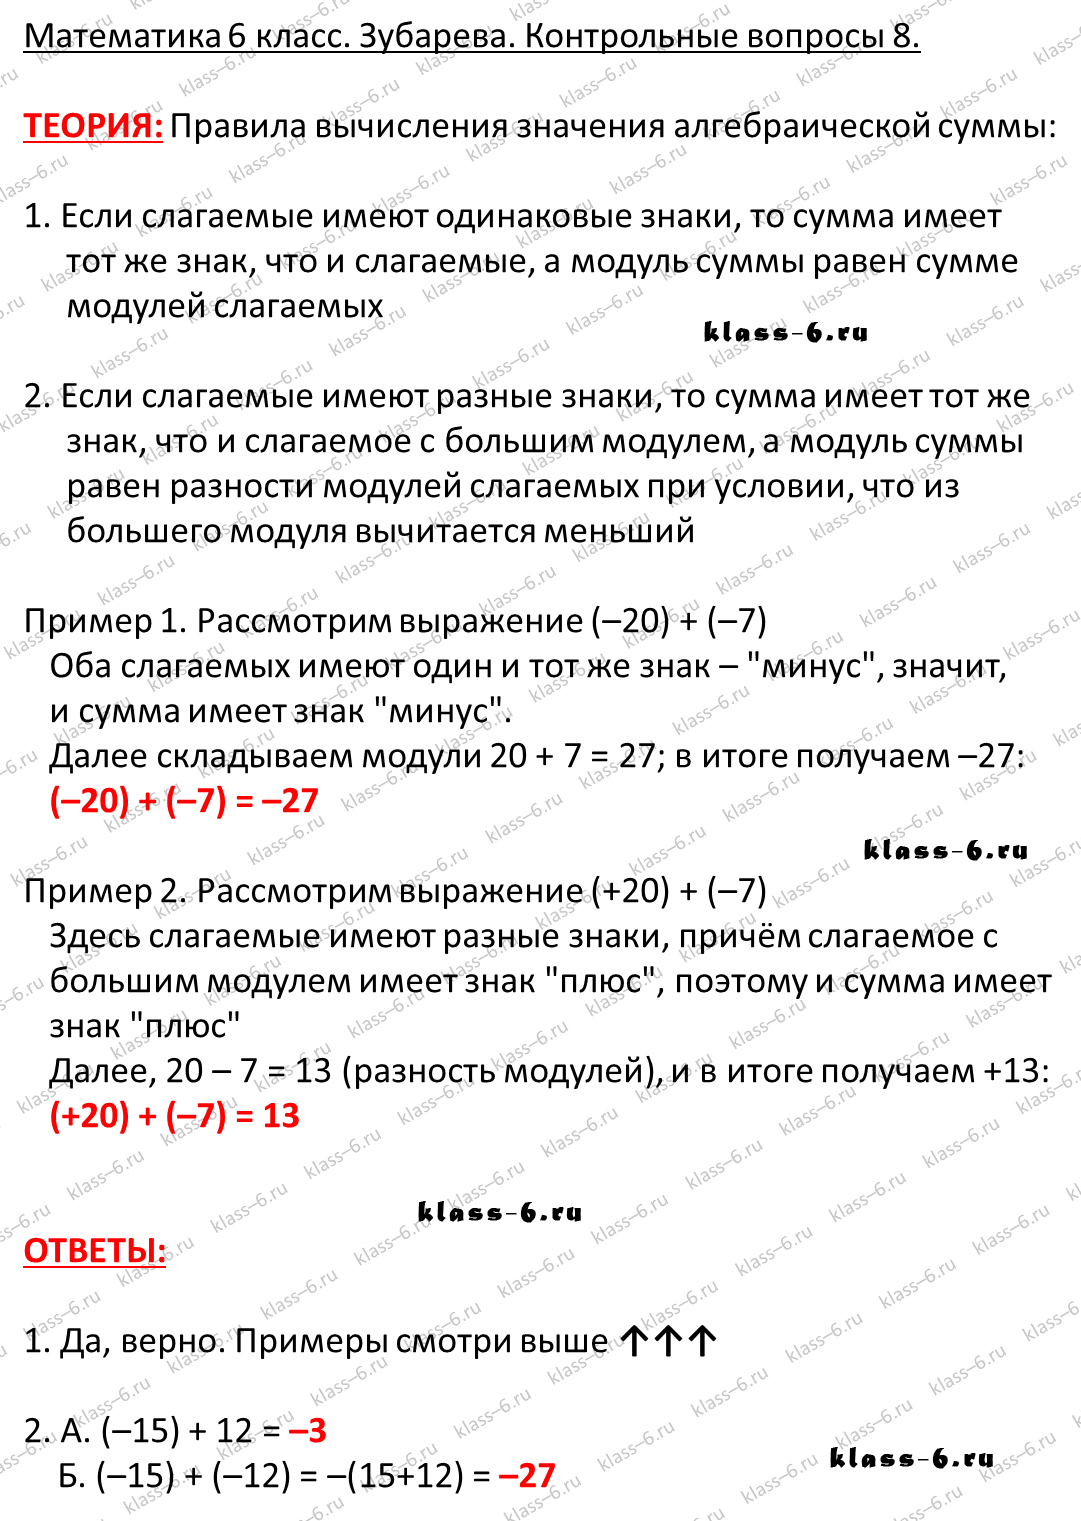 Списывай ру контрольные вопросы и задания 6 класс русский язык